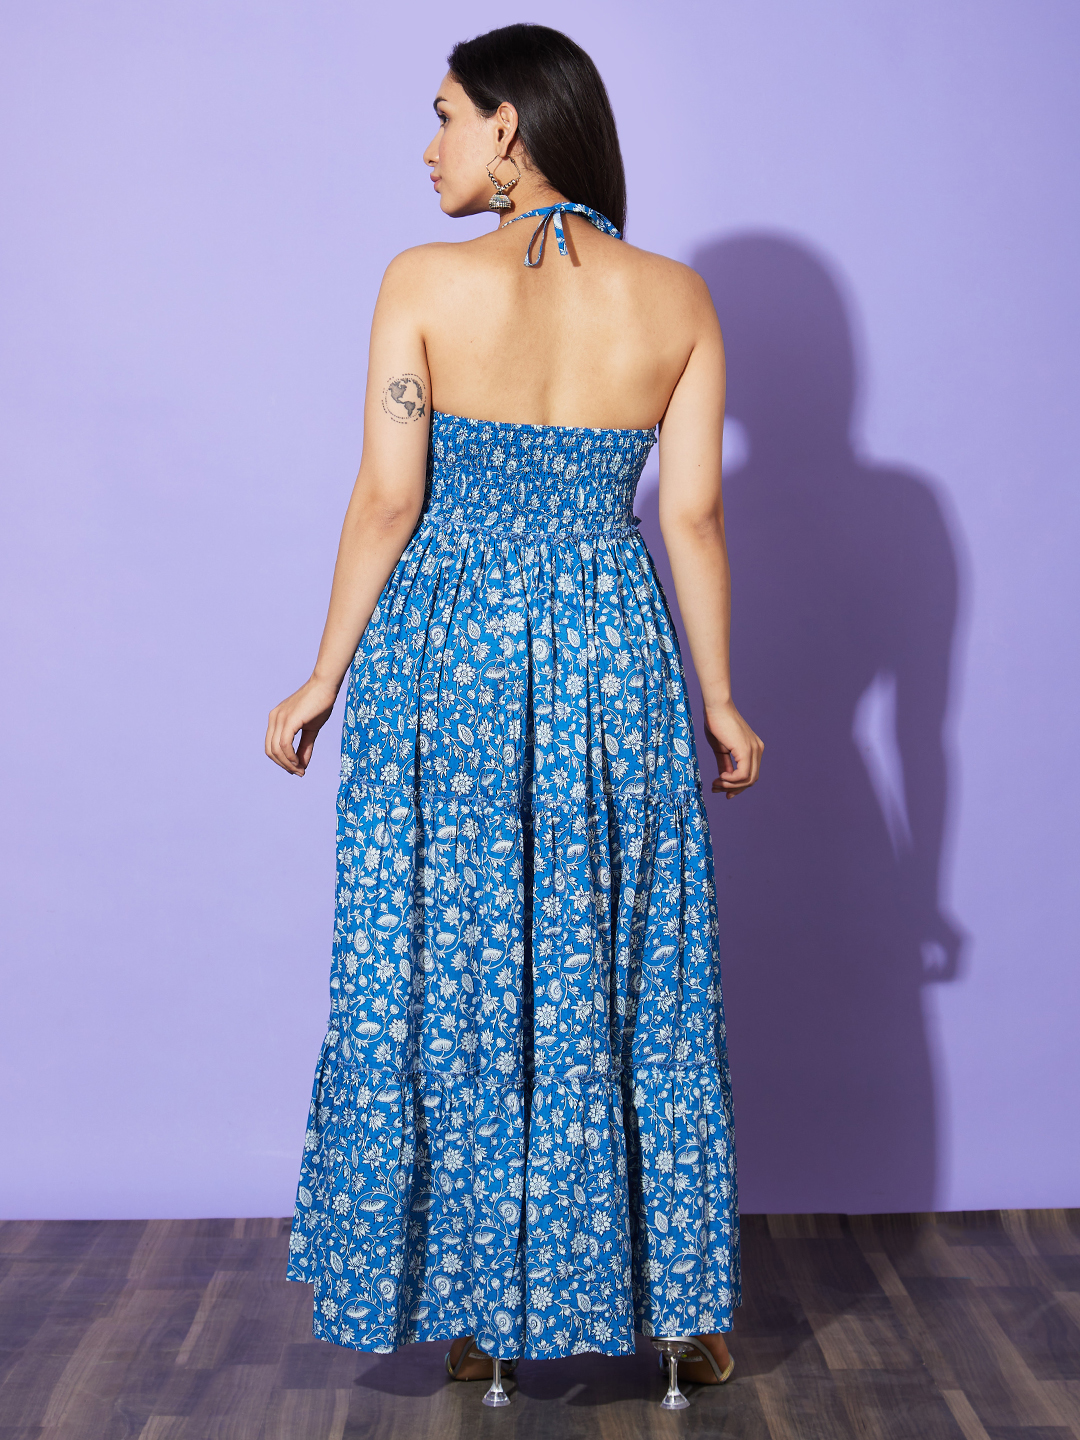 Globus Women Blue Floral Print Halter Neck Cotton A-Line Casual Dress